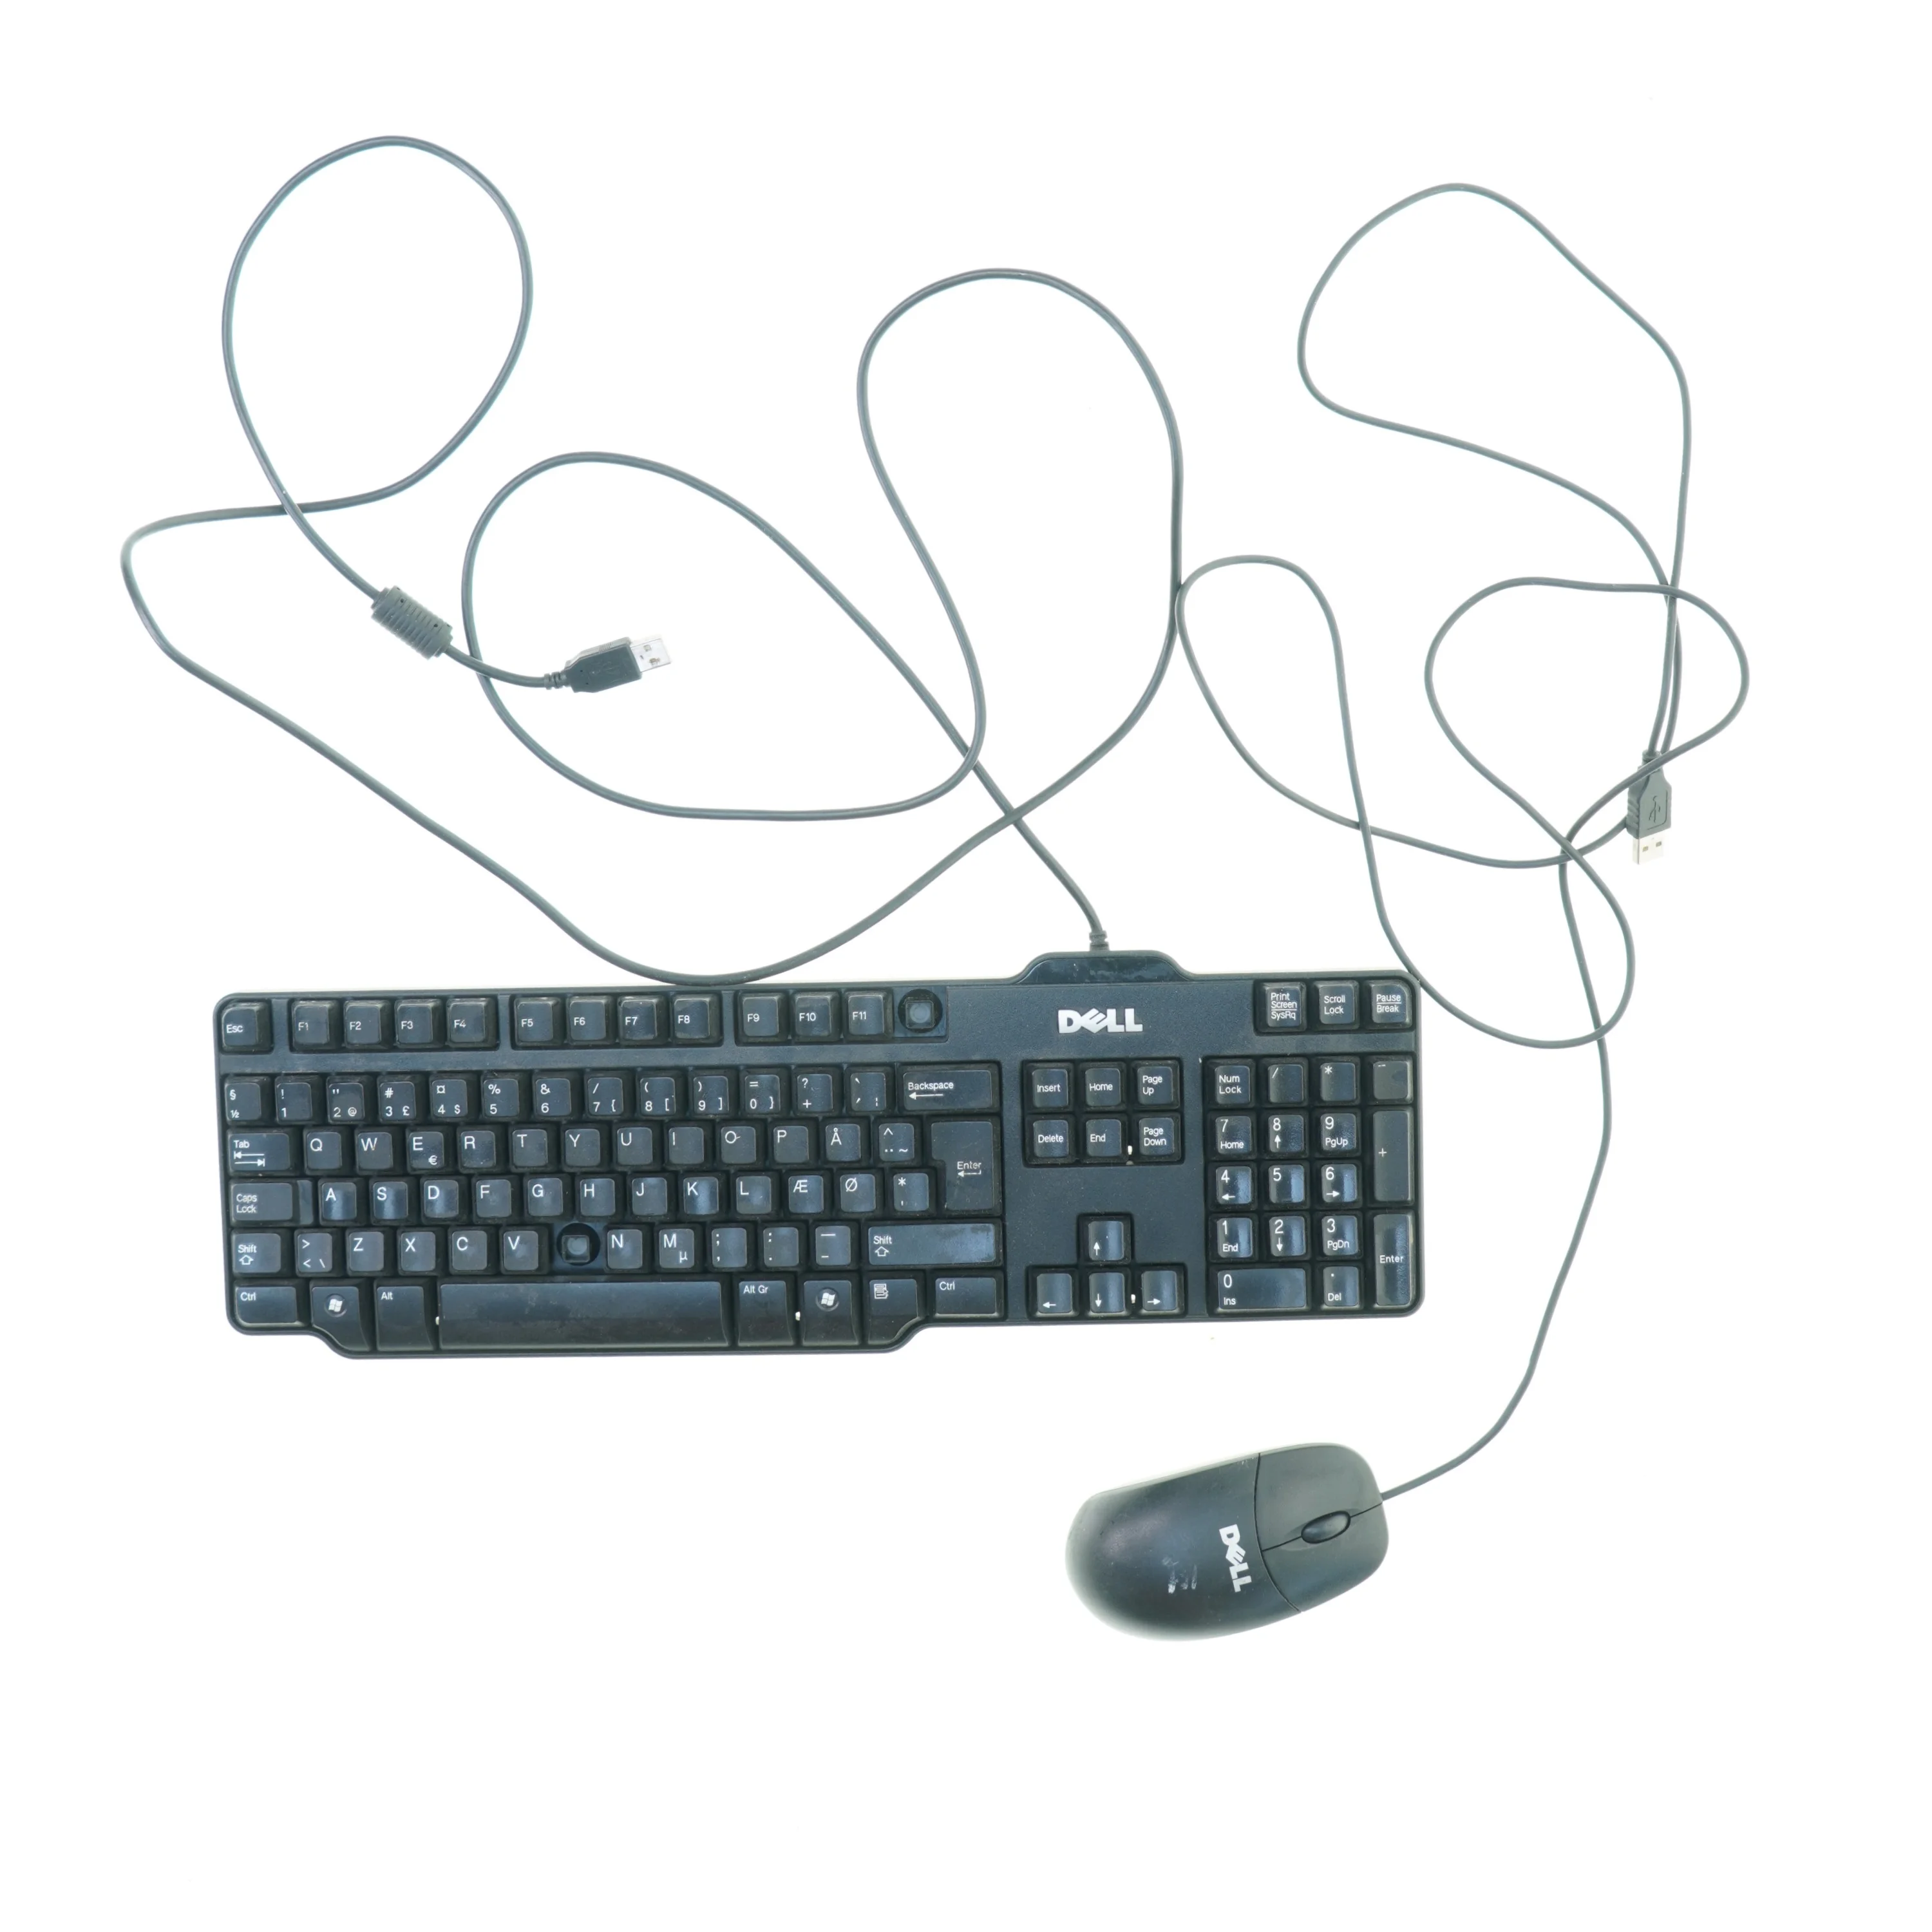 Keyboard og mus fra Dell (str. x 13 cm 12 x cm)